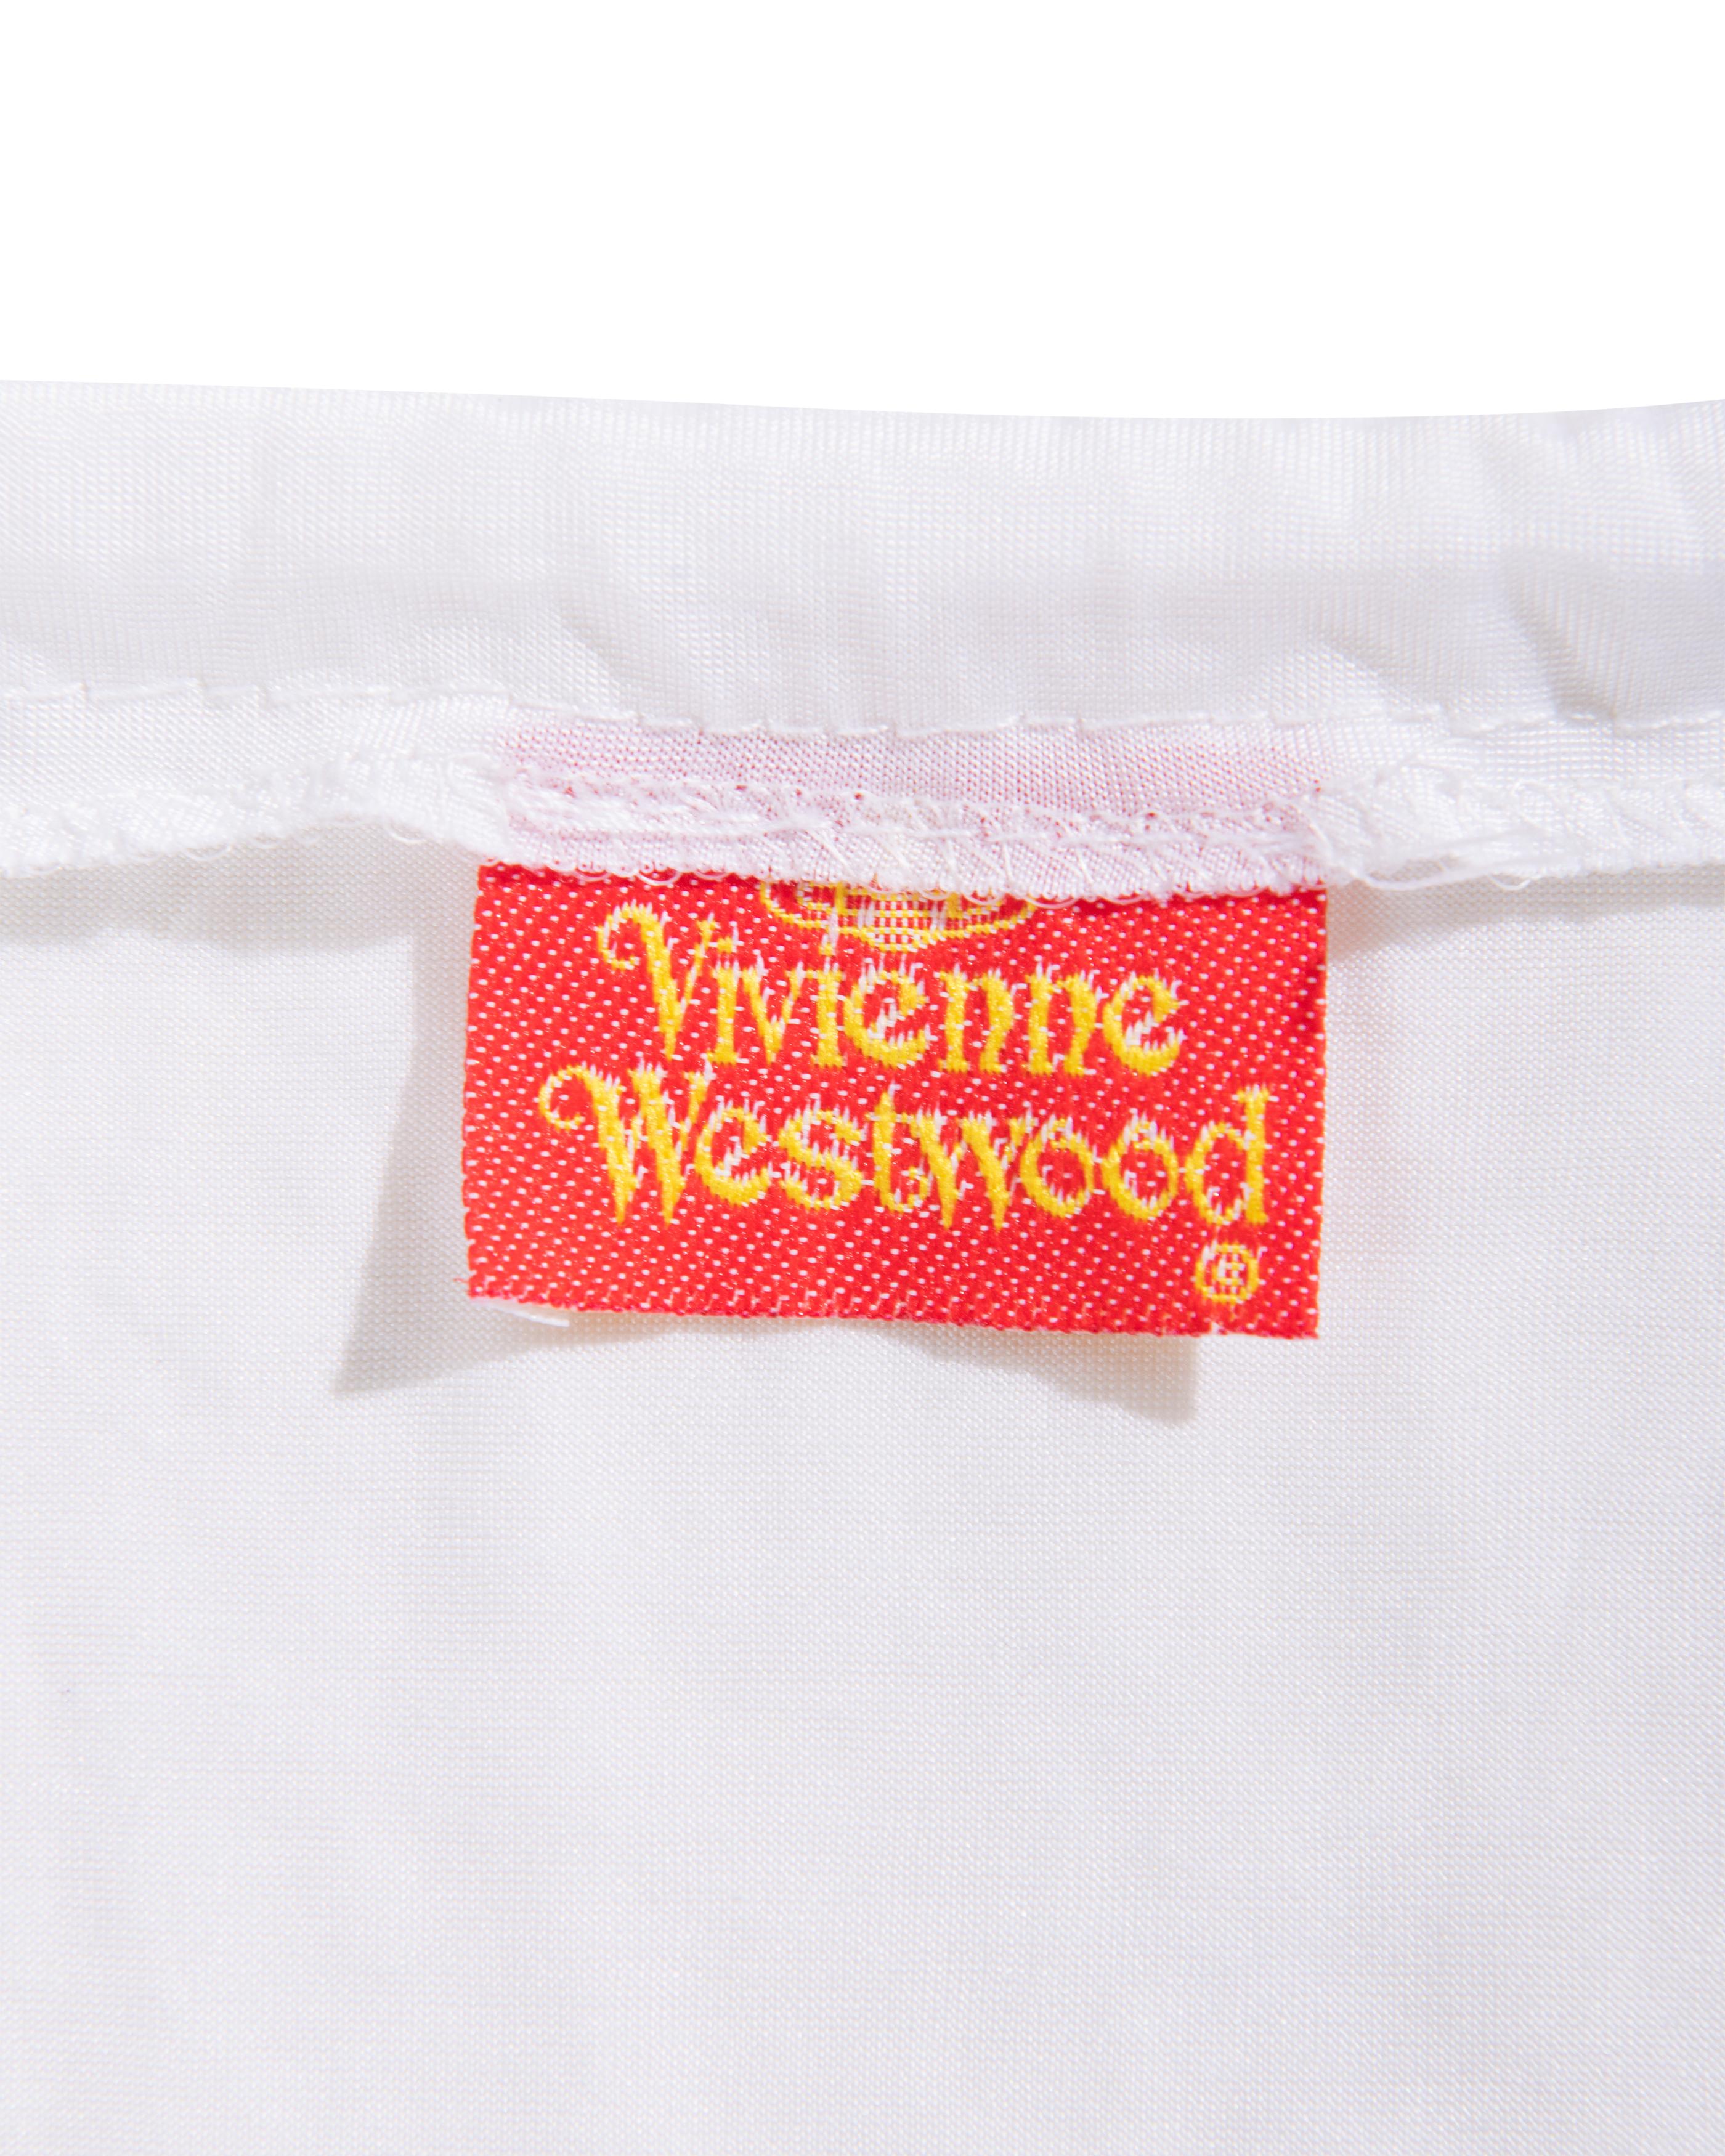 S/S 1988 Vivienne Westwood White Mini jupe avec buste amovible 7